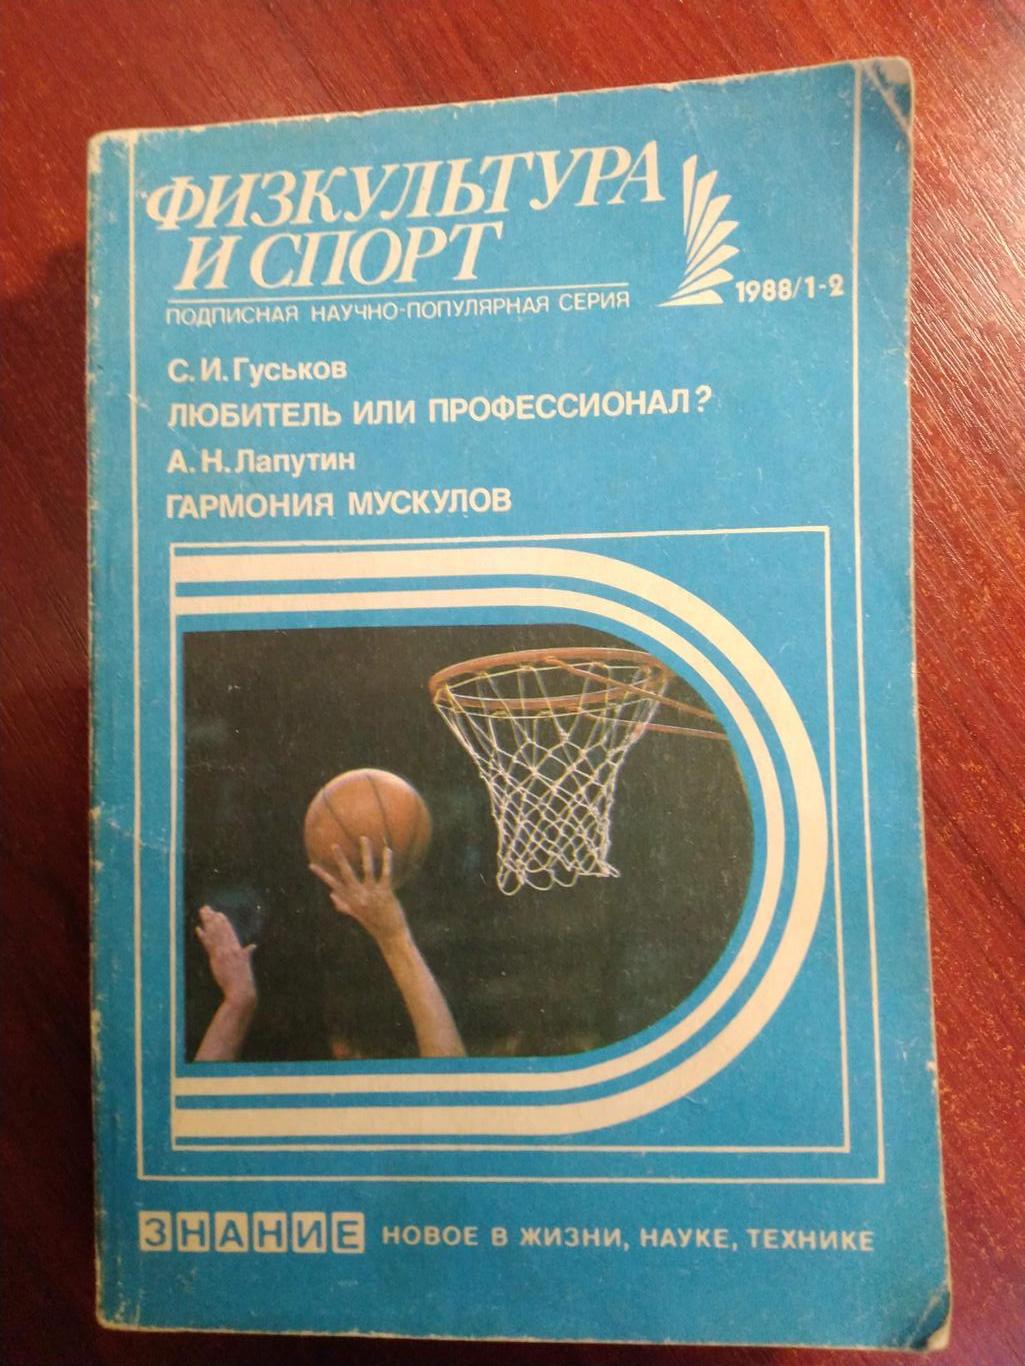 Серия Физкультура и спорт1988 №1-2 Любитель или профессионалГармония мускуло